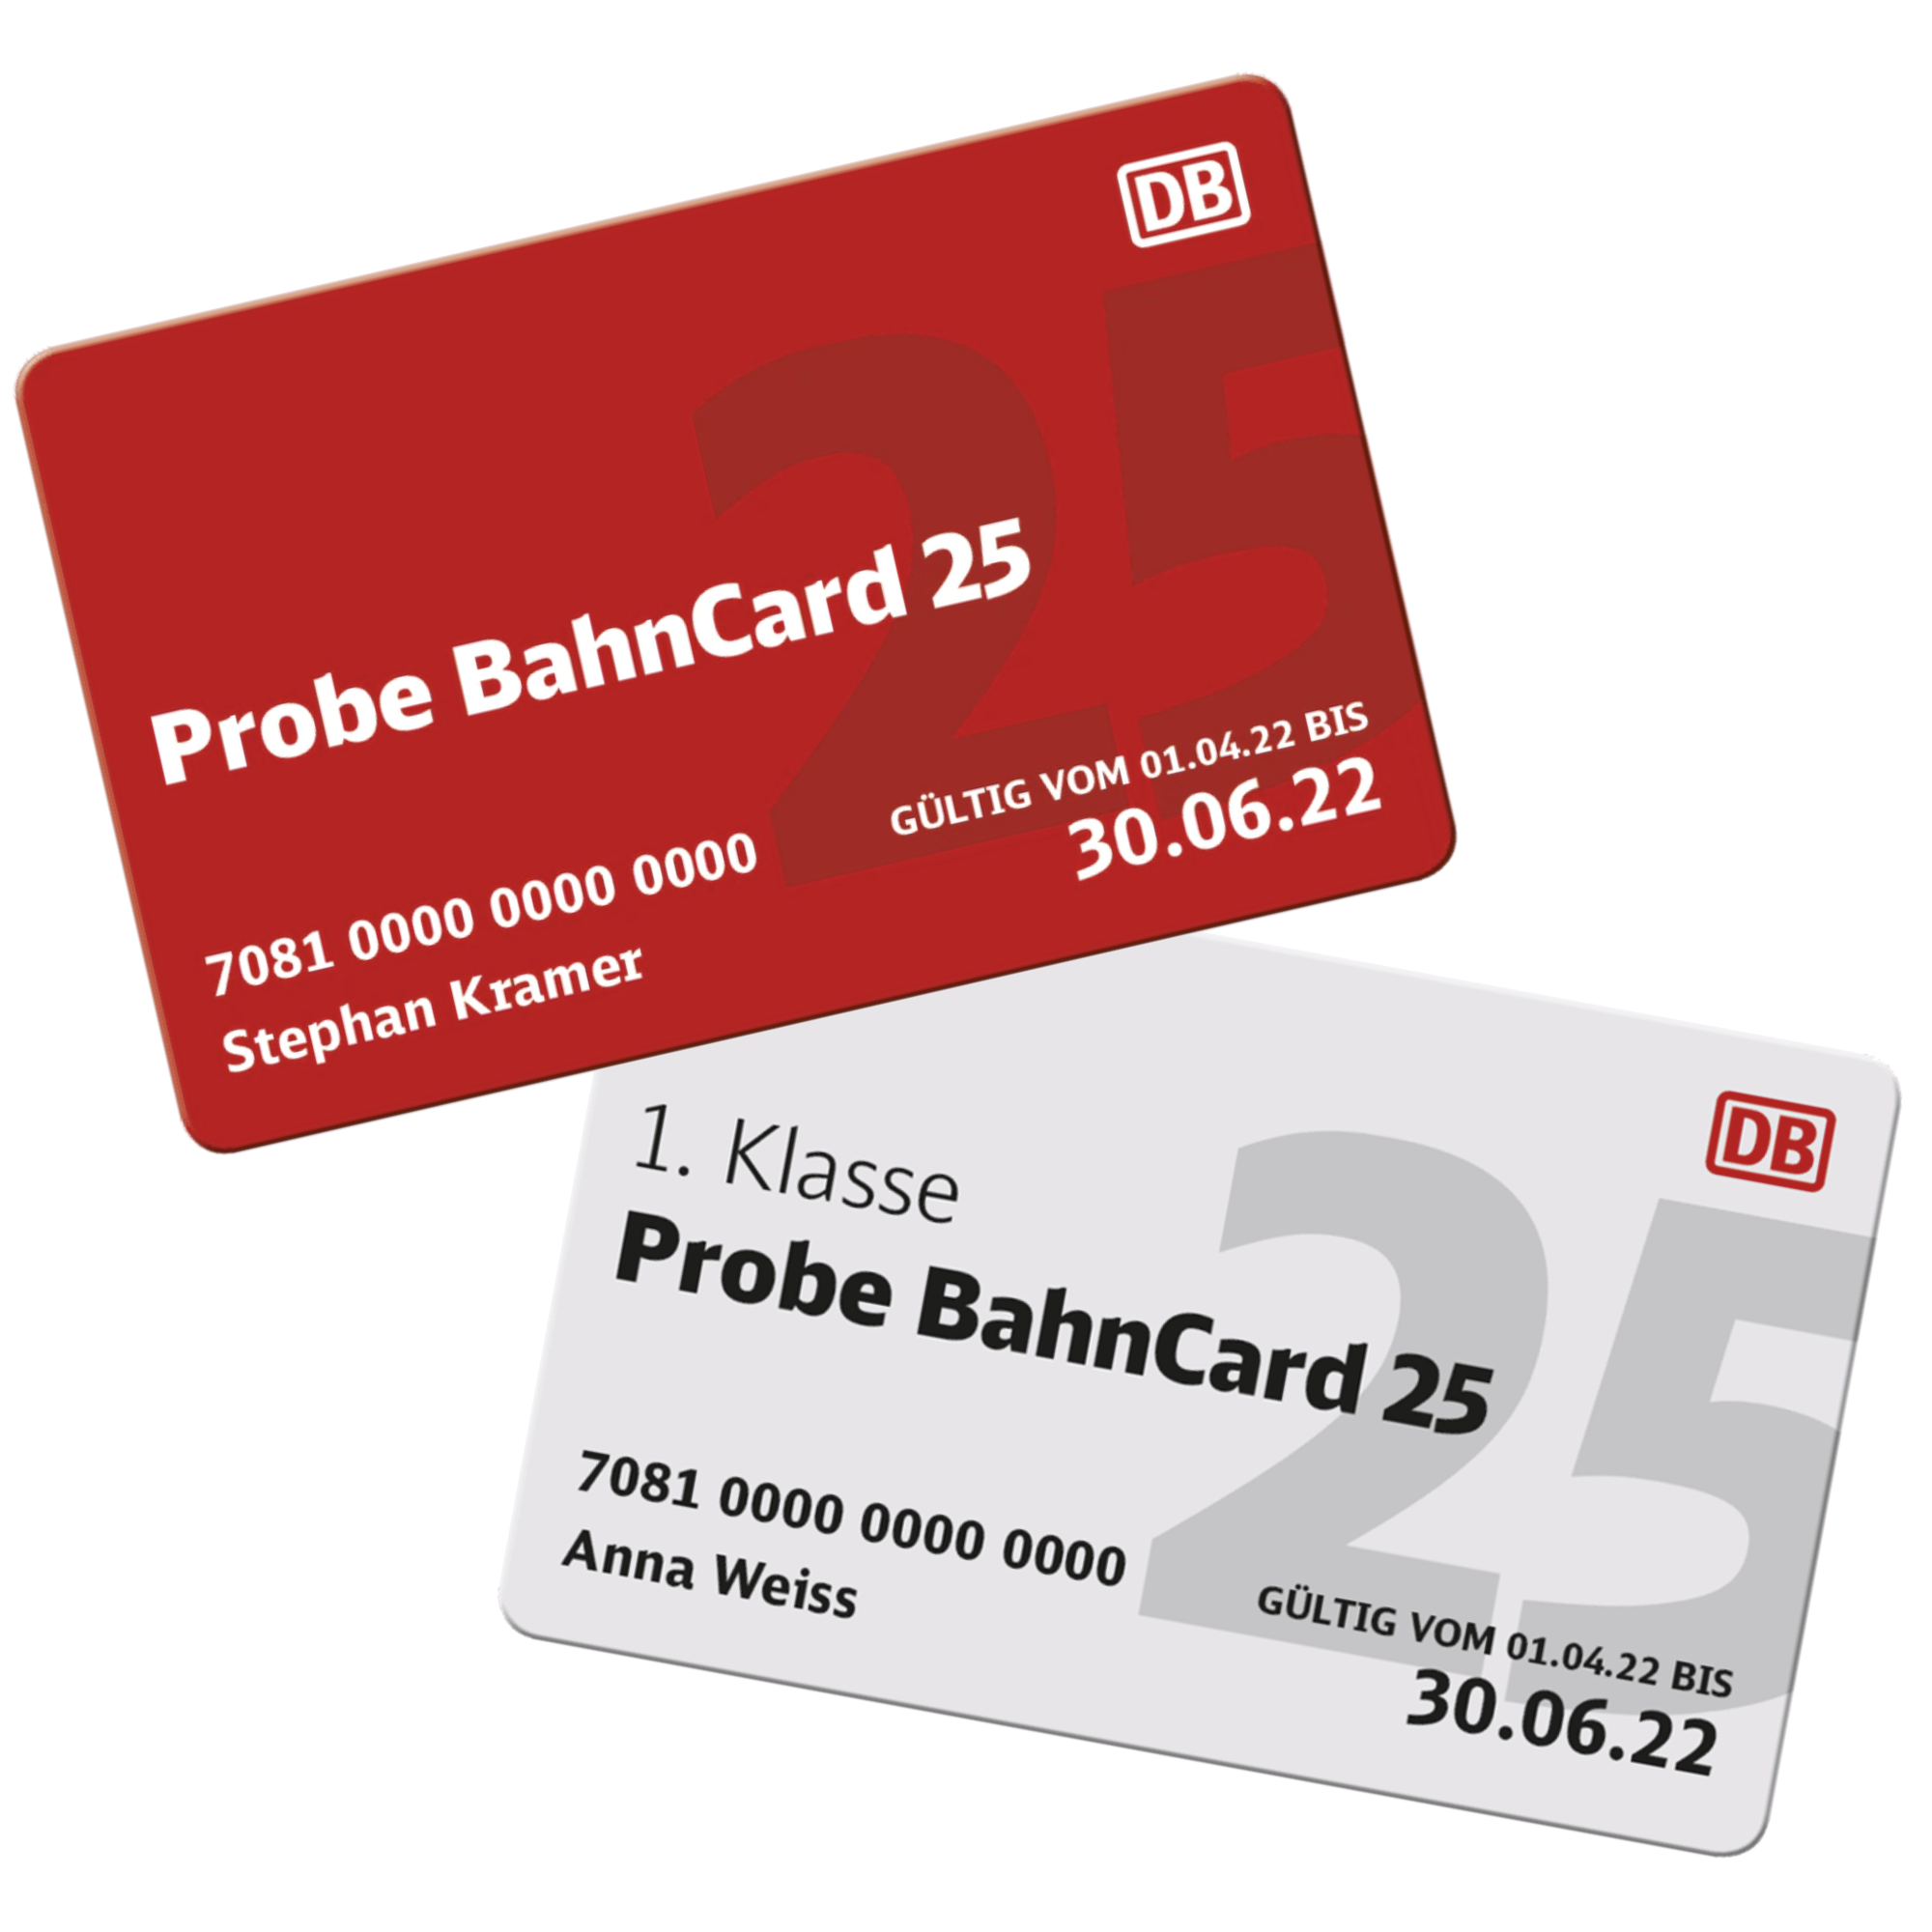 Probe BahnCard 25